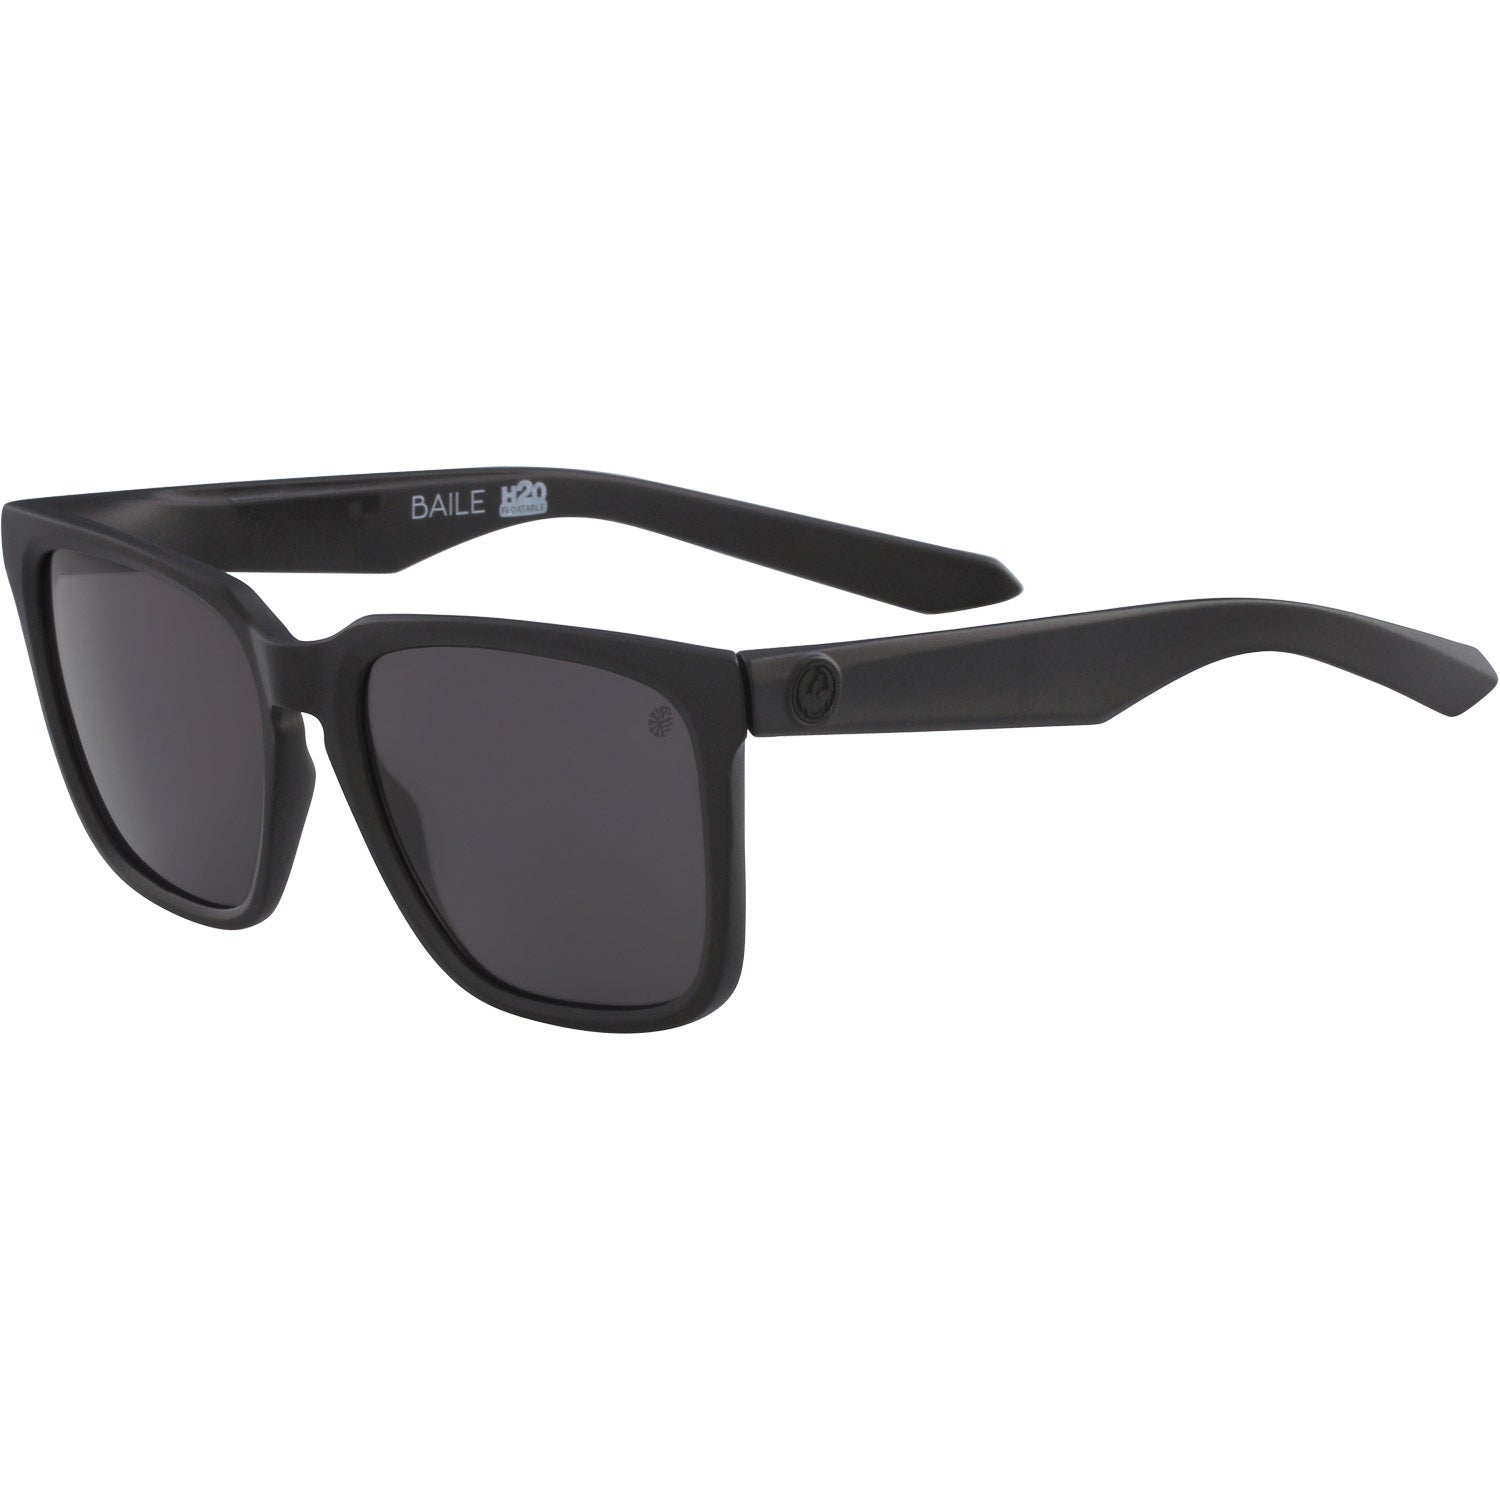 Dragon Bail Sunglasses H20 Matte Black w/ Grey Polar